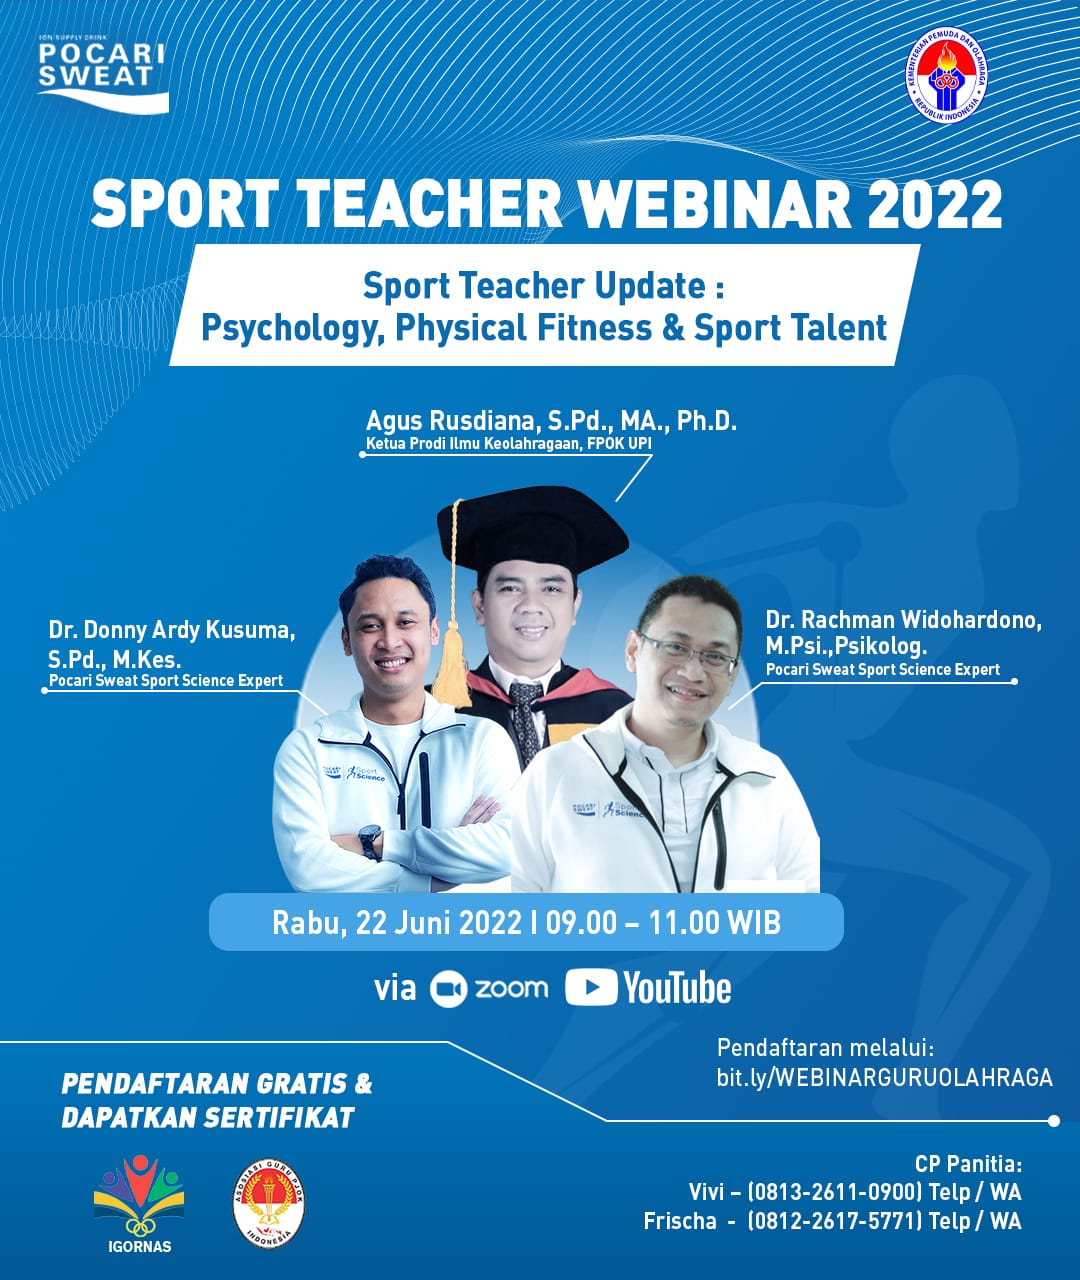 Prodi Ilmu Keolahragaan FPOK UPI Bekerjasama Dengan POCARI SWEAT Menyelenggrakan “Sport Teacher Webinar 2022”